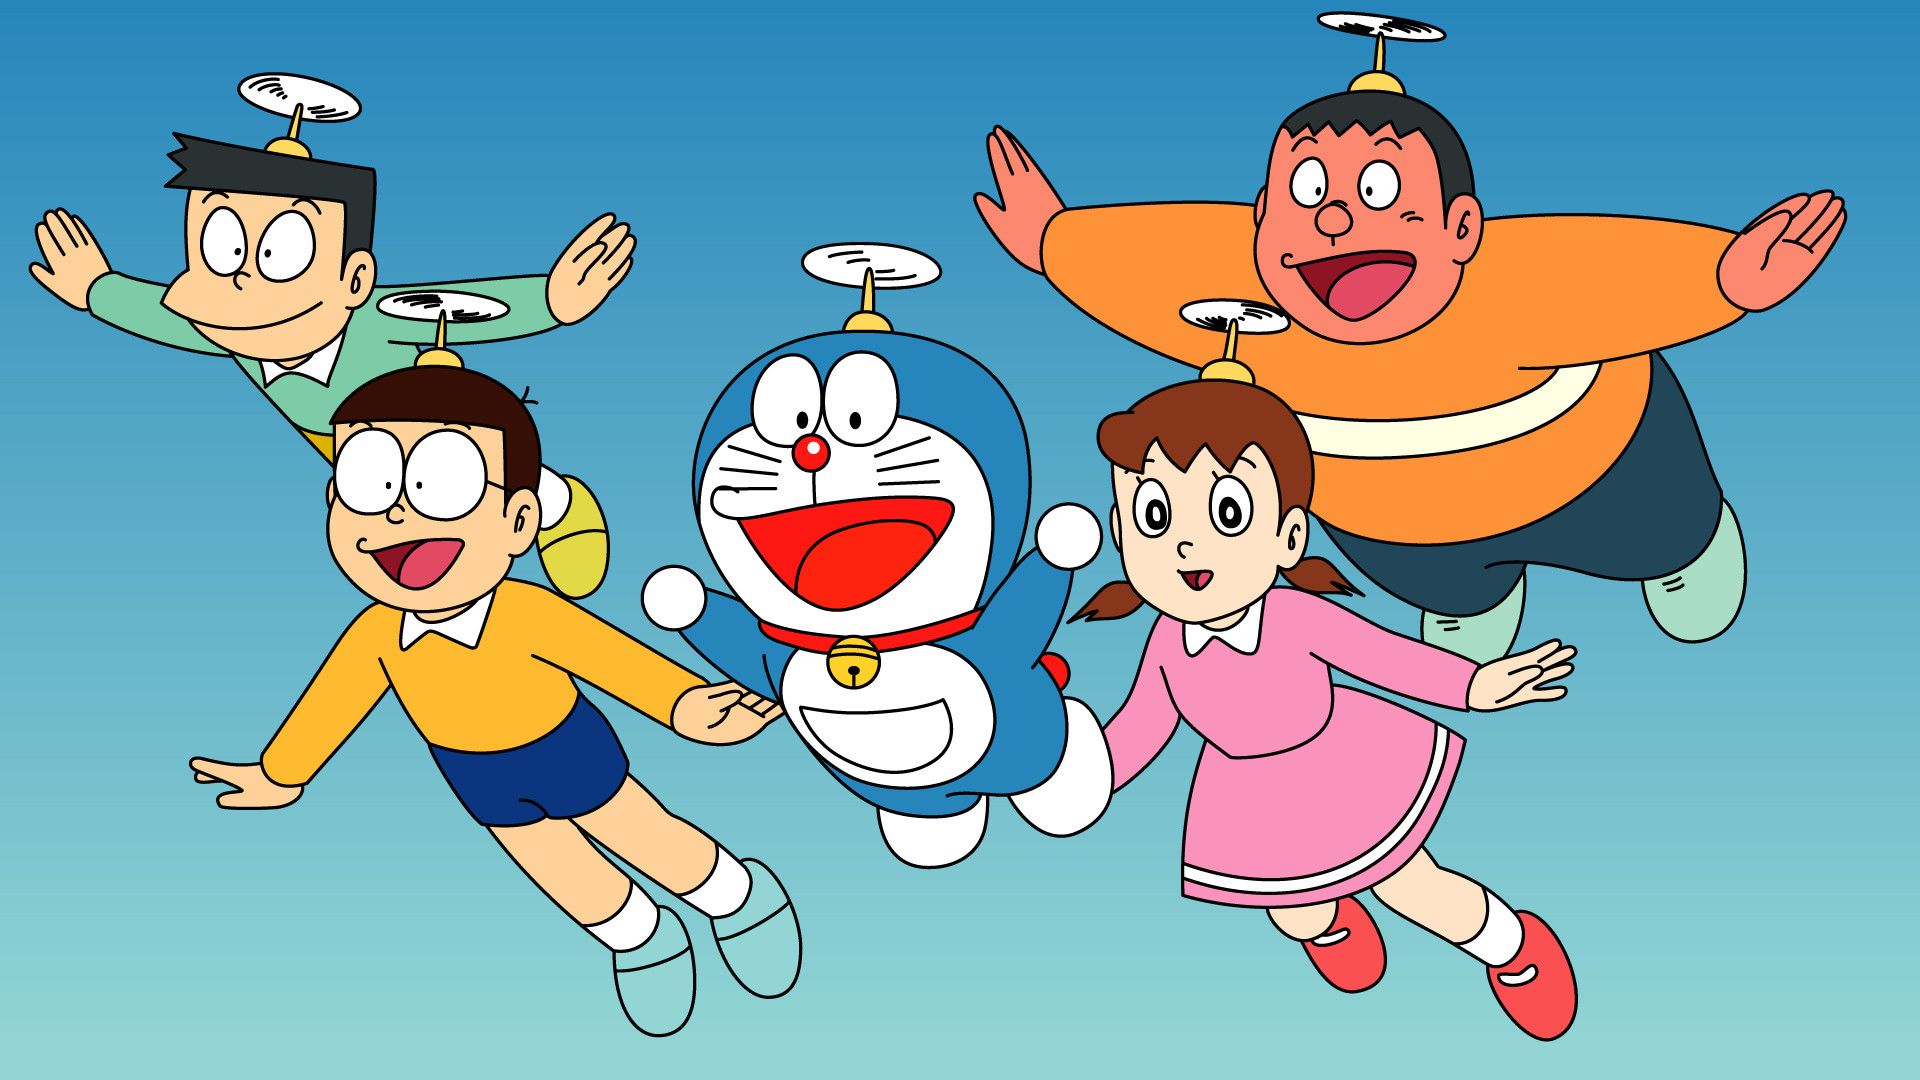 《哆啦A梦 Doraemon》第2季